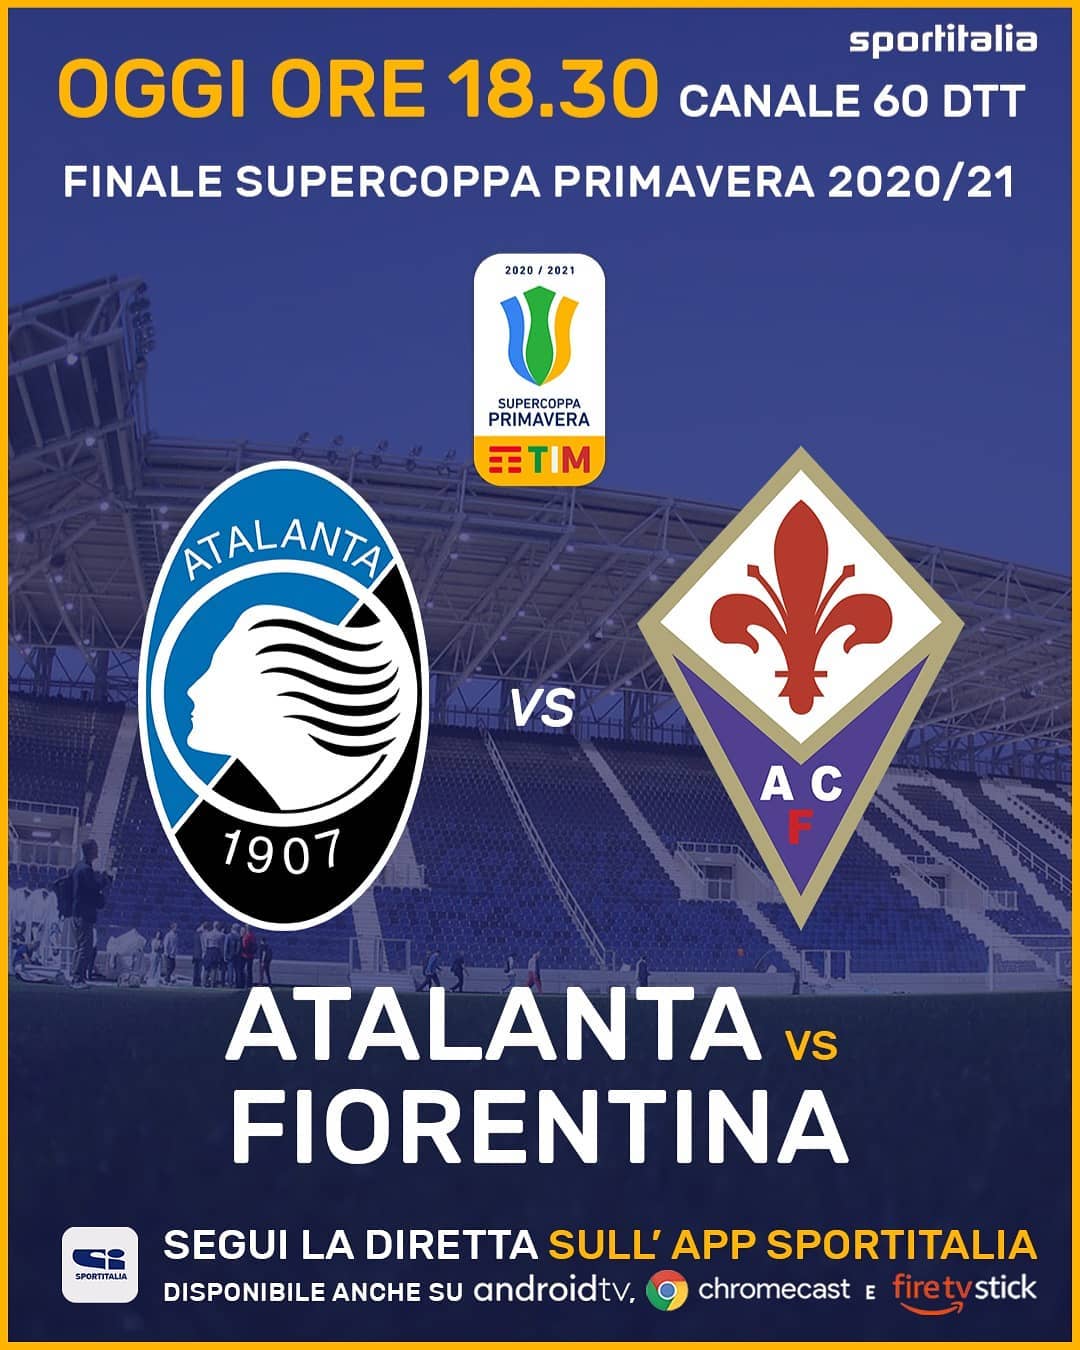 SuperCoppa Primavera - Atalanta vs Fiorentina in diretta Sportitalia